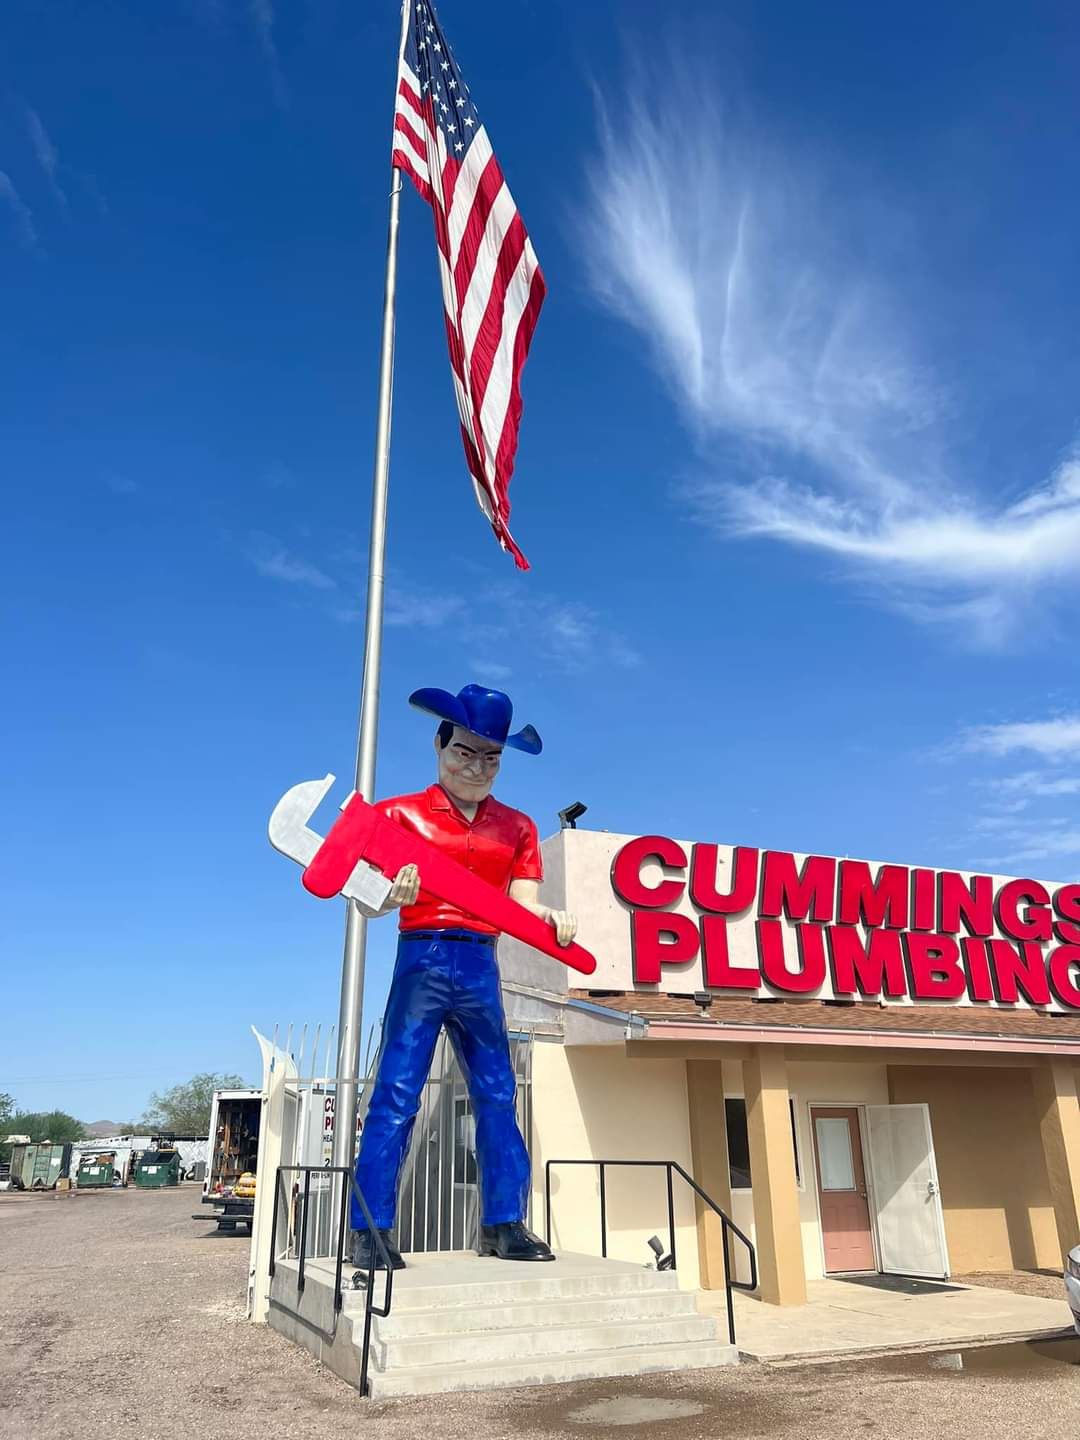 Cummings Plumbing Building